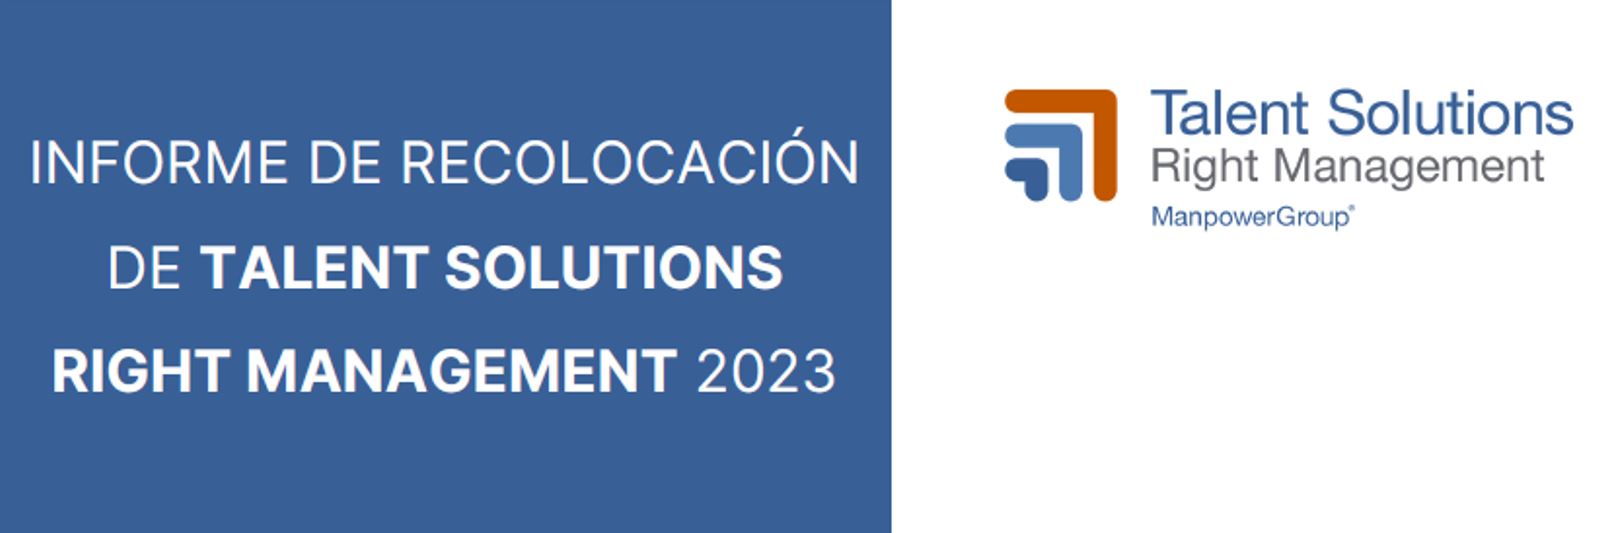 Informe de Recolocación 2023 de Talent Solutions